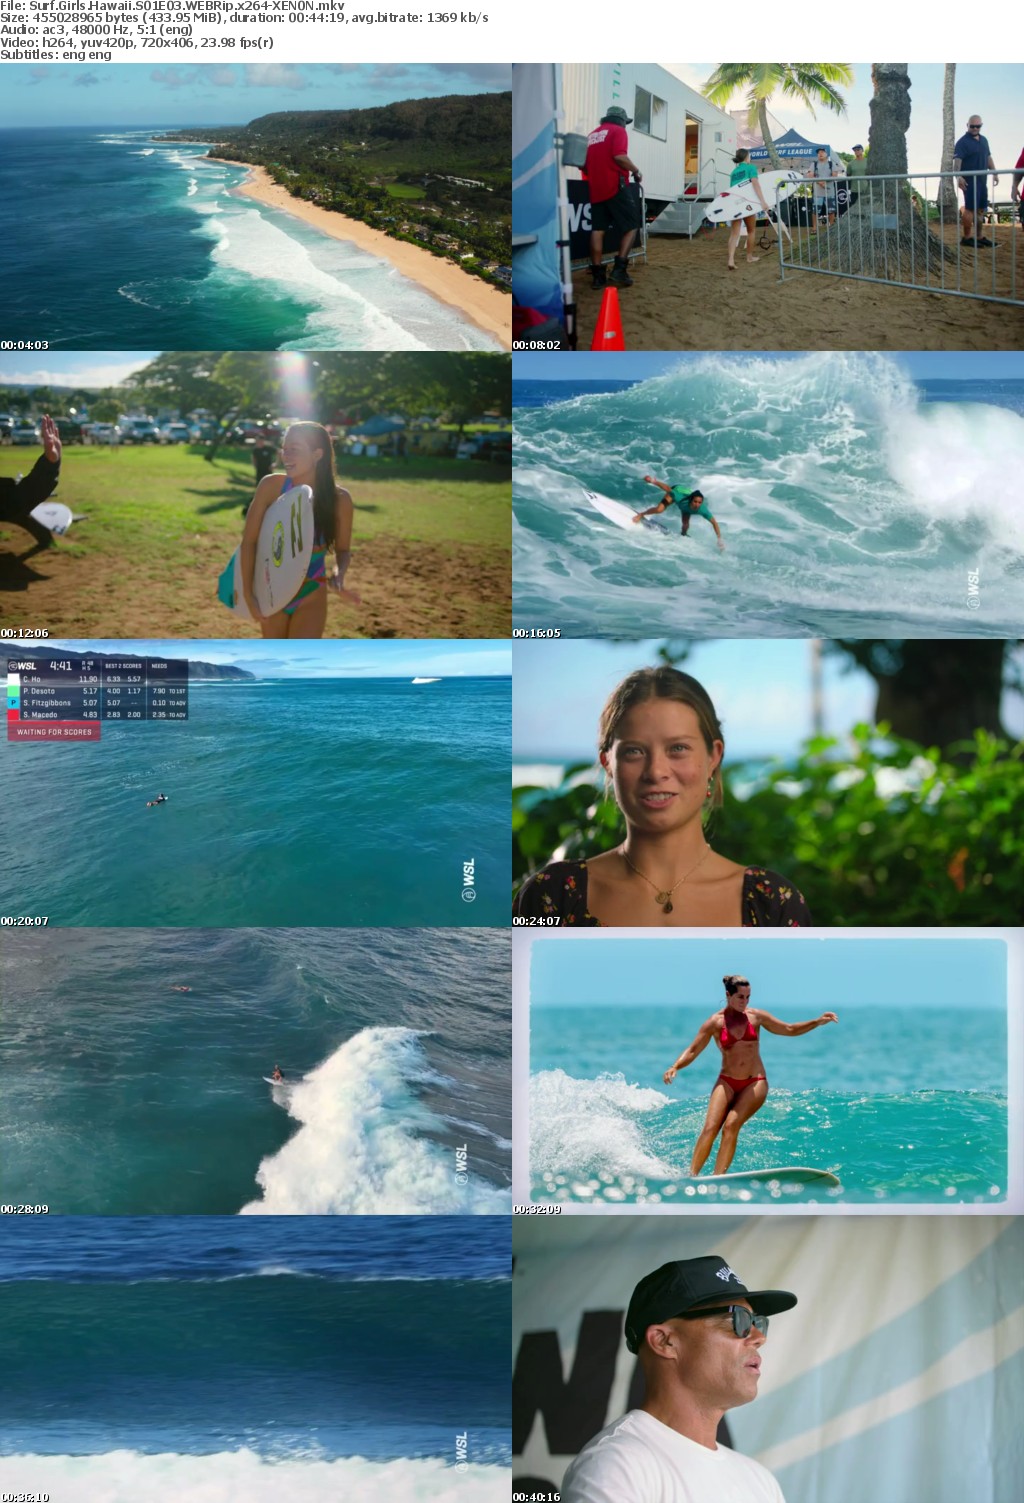 Surf Girls Hawaii S01E03 WEBRip x264-XEN0N